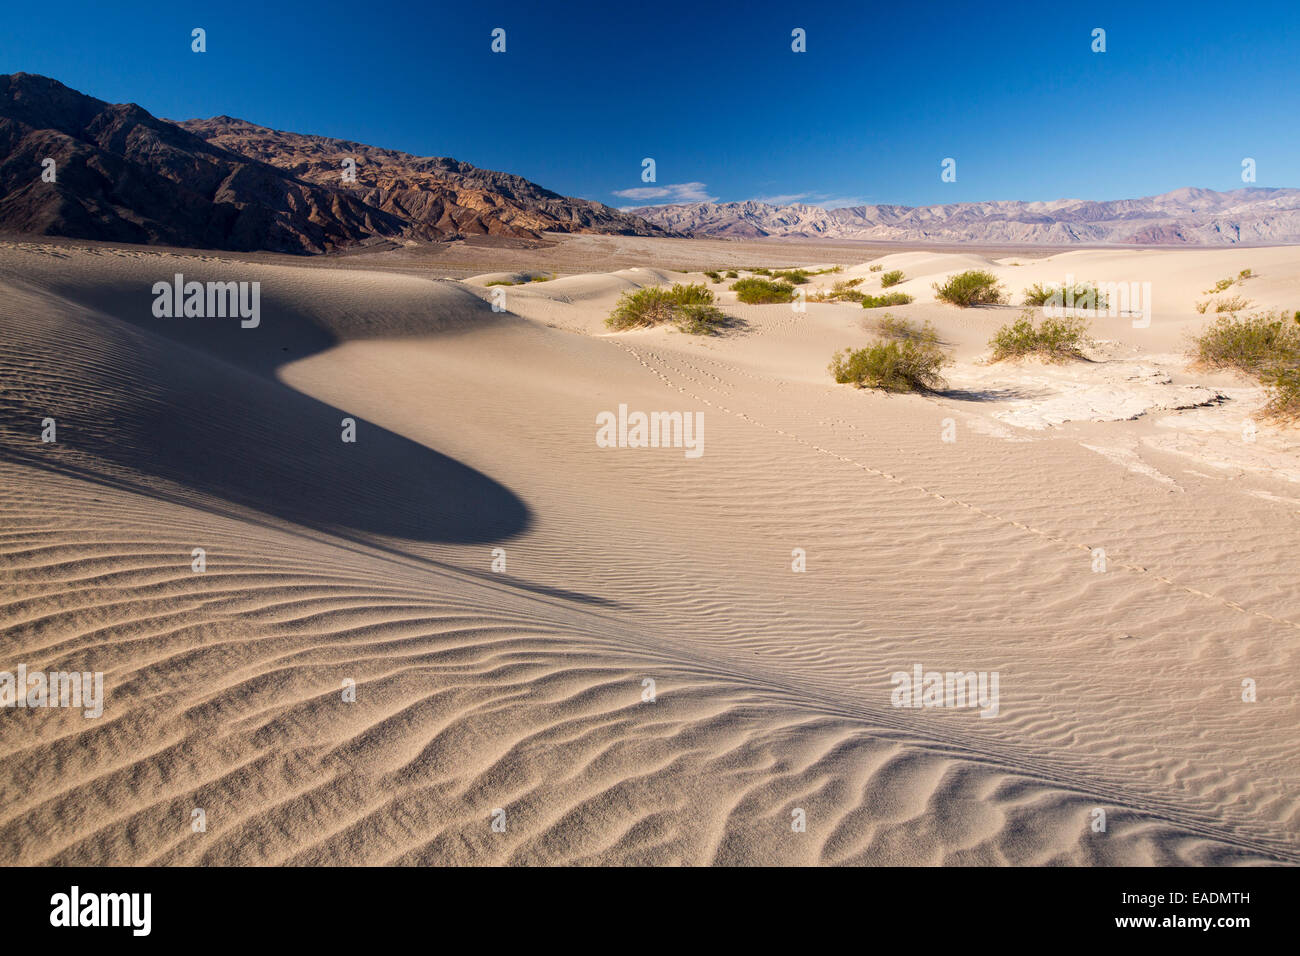 Le mesquite flat dunes dans la vallée de la mort qui est le plus faible, le plus chaud, le plus sec aux Etats-Unis, avec une pluviométrie annuelle moyenne d'environ 2 pouces, certaines années, il ne reçoit pas de pluie du tout. Banque D'Images